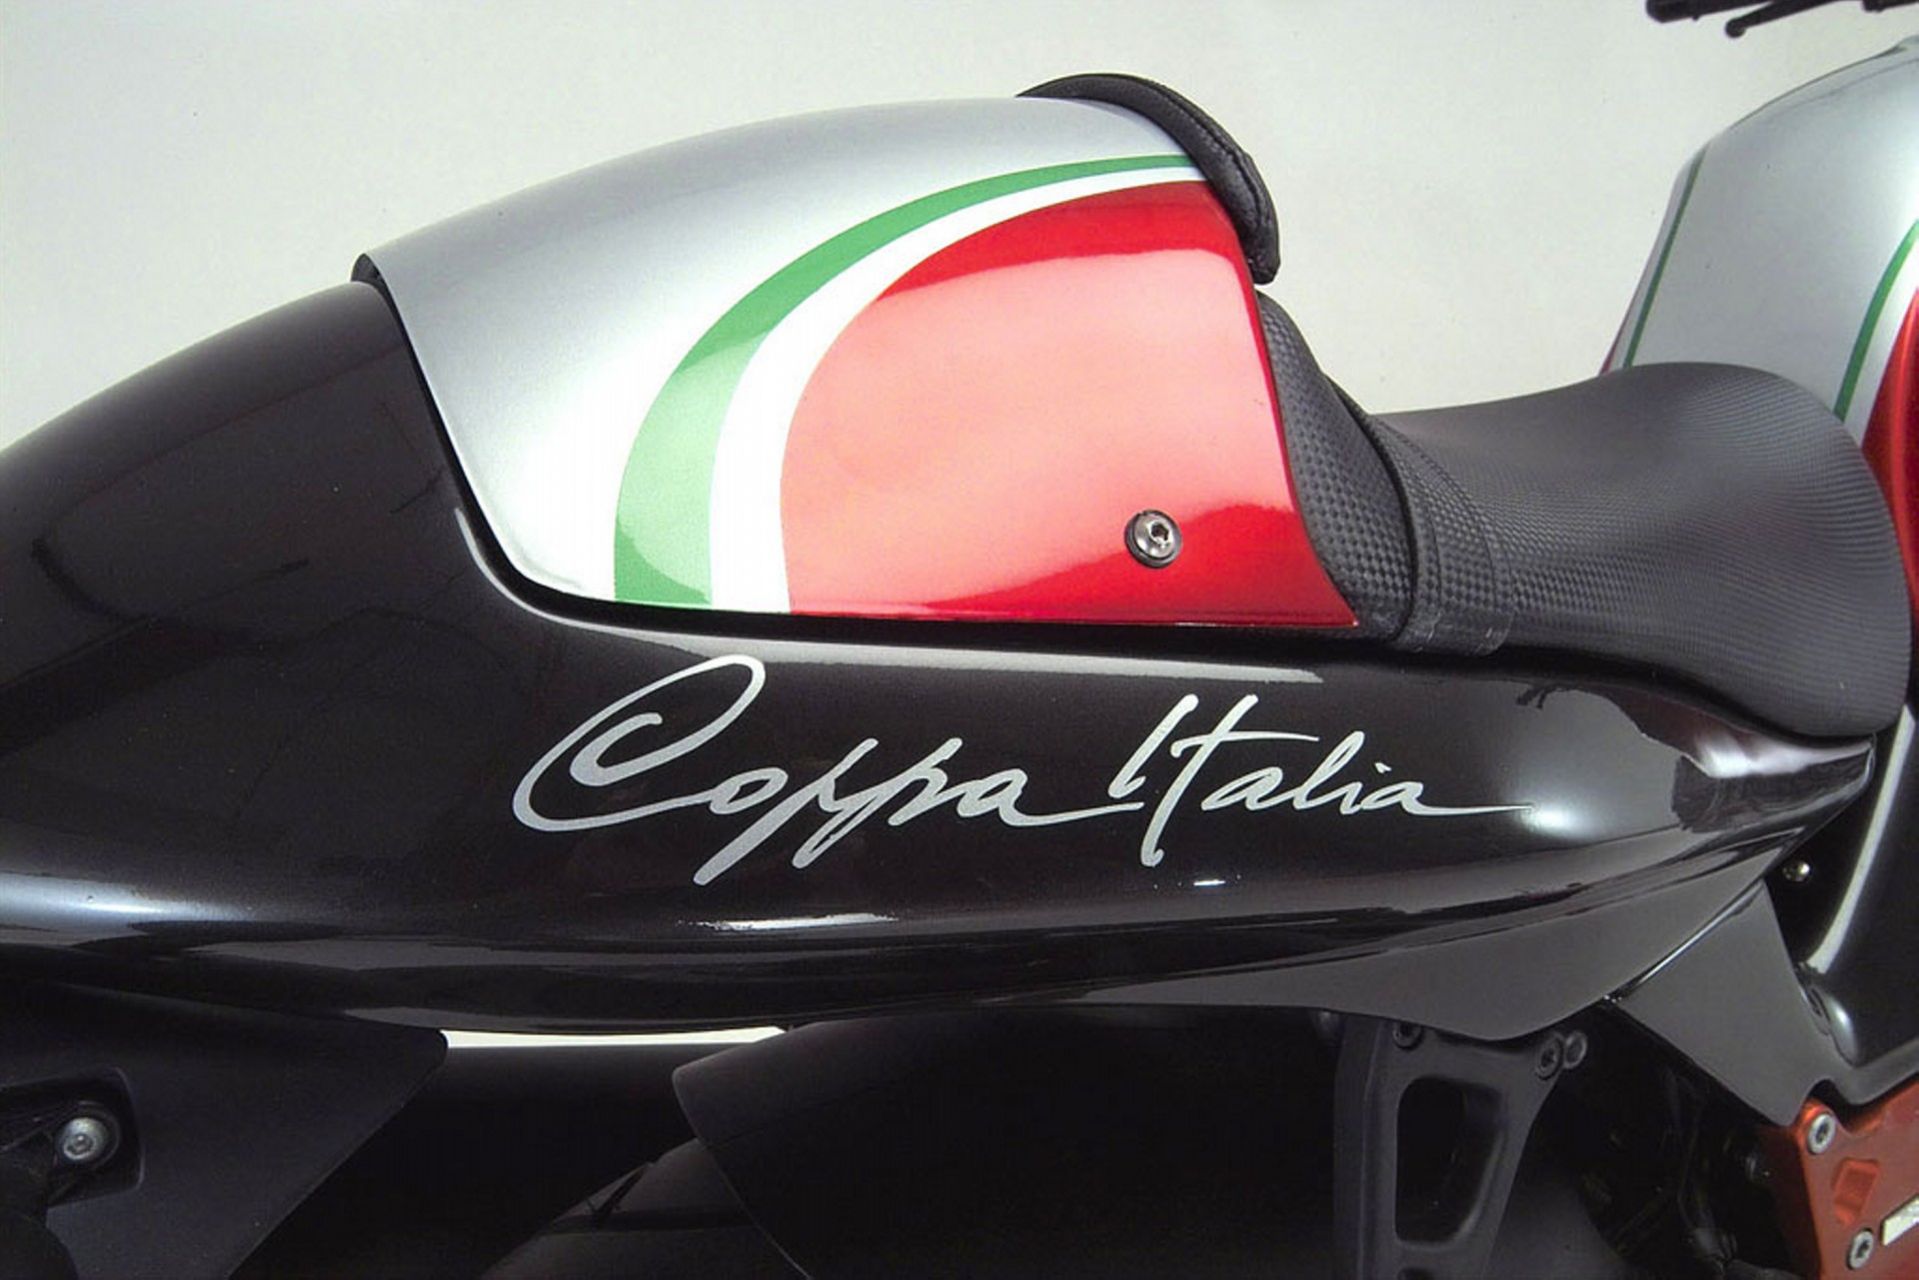 Moto Guzzi V11 Coppa Italia (2)